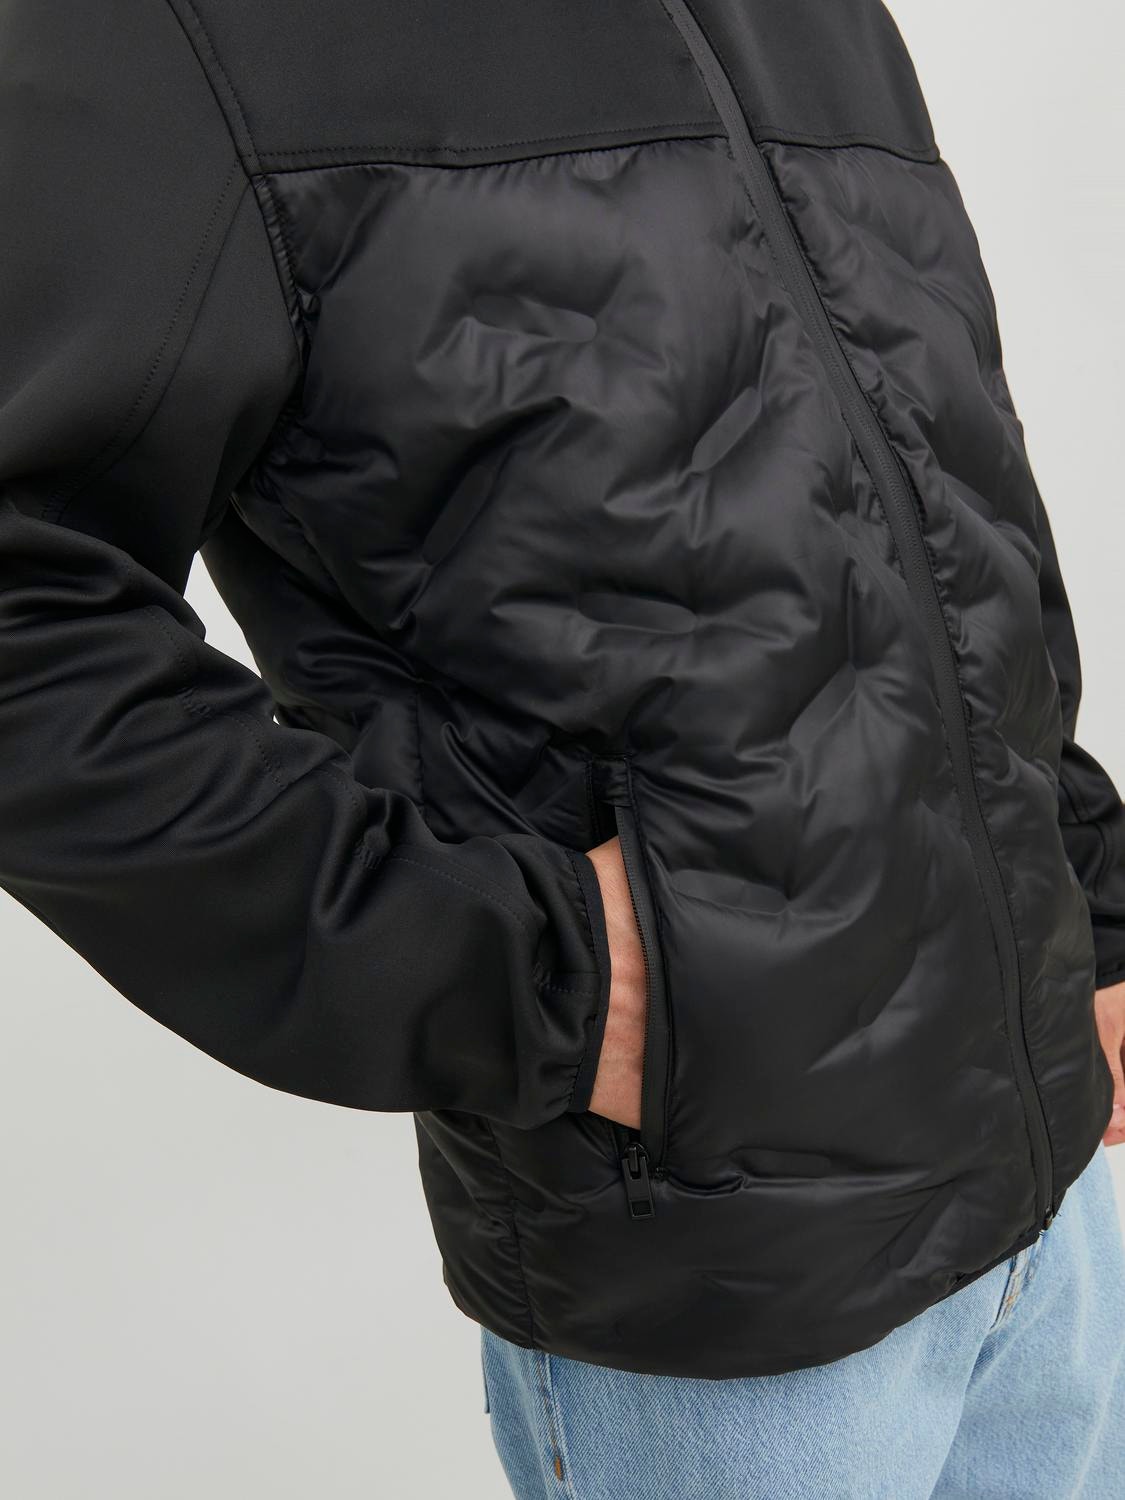 Jack & Jones Hybrid jacket -Black - 12237726